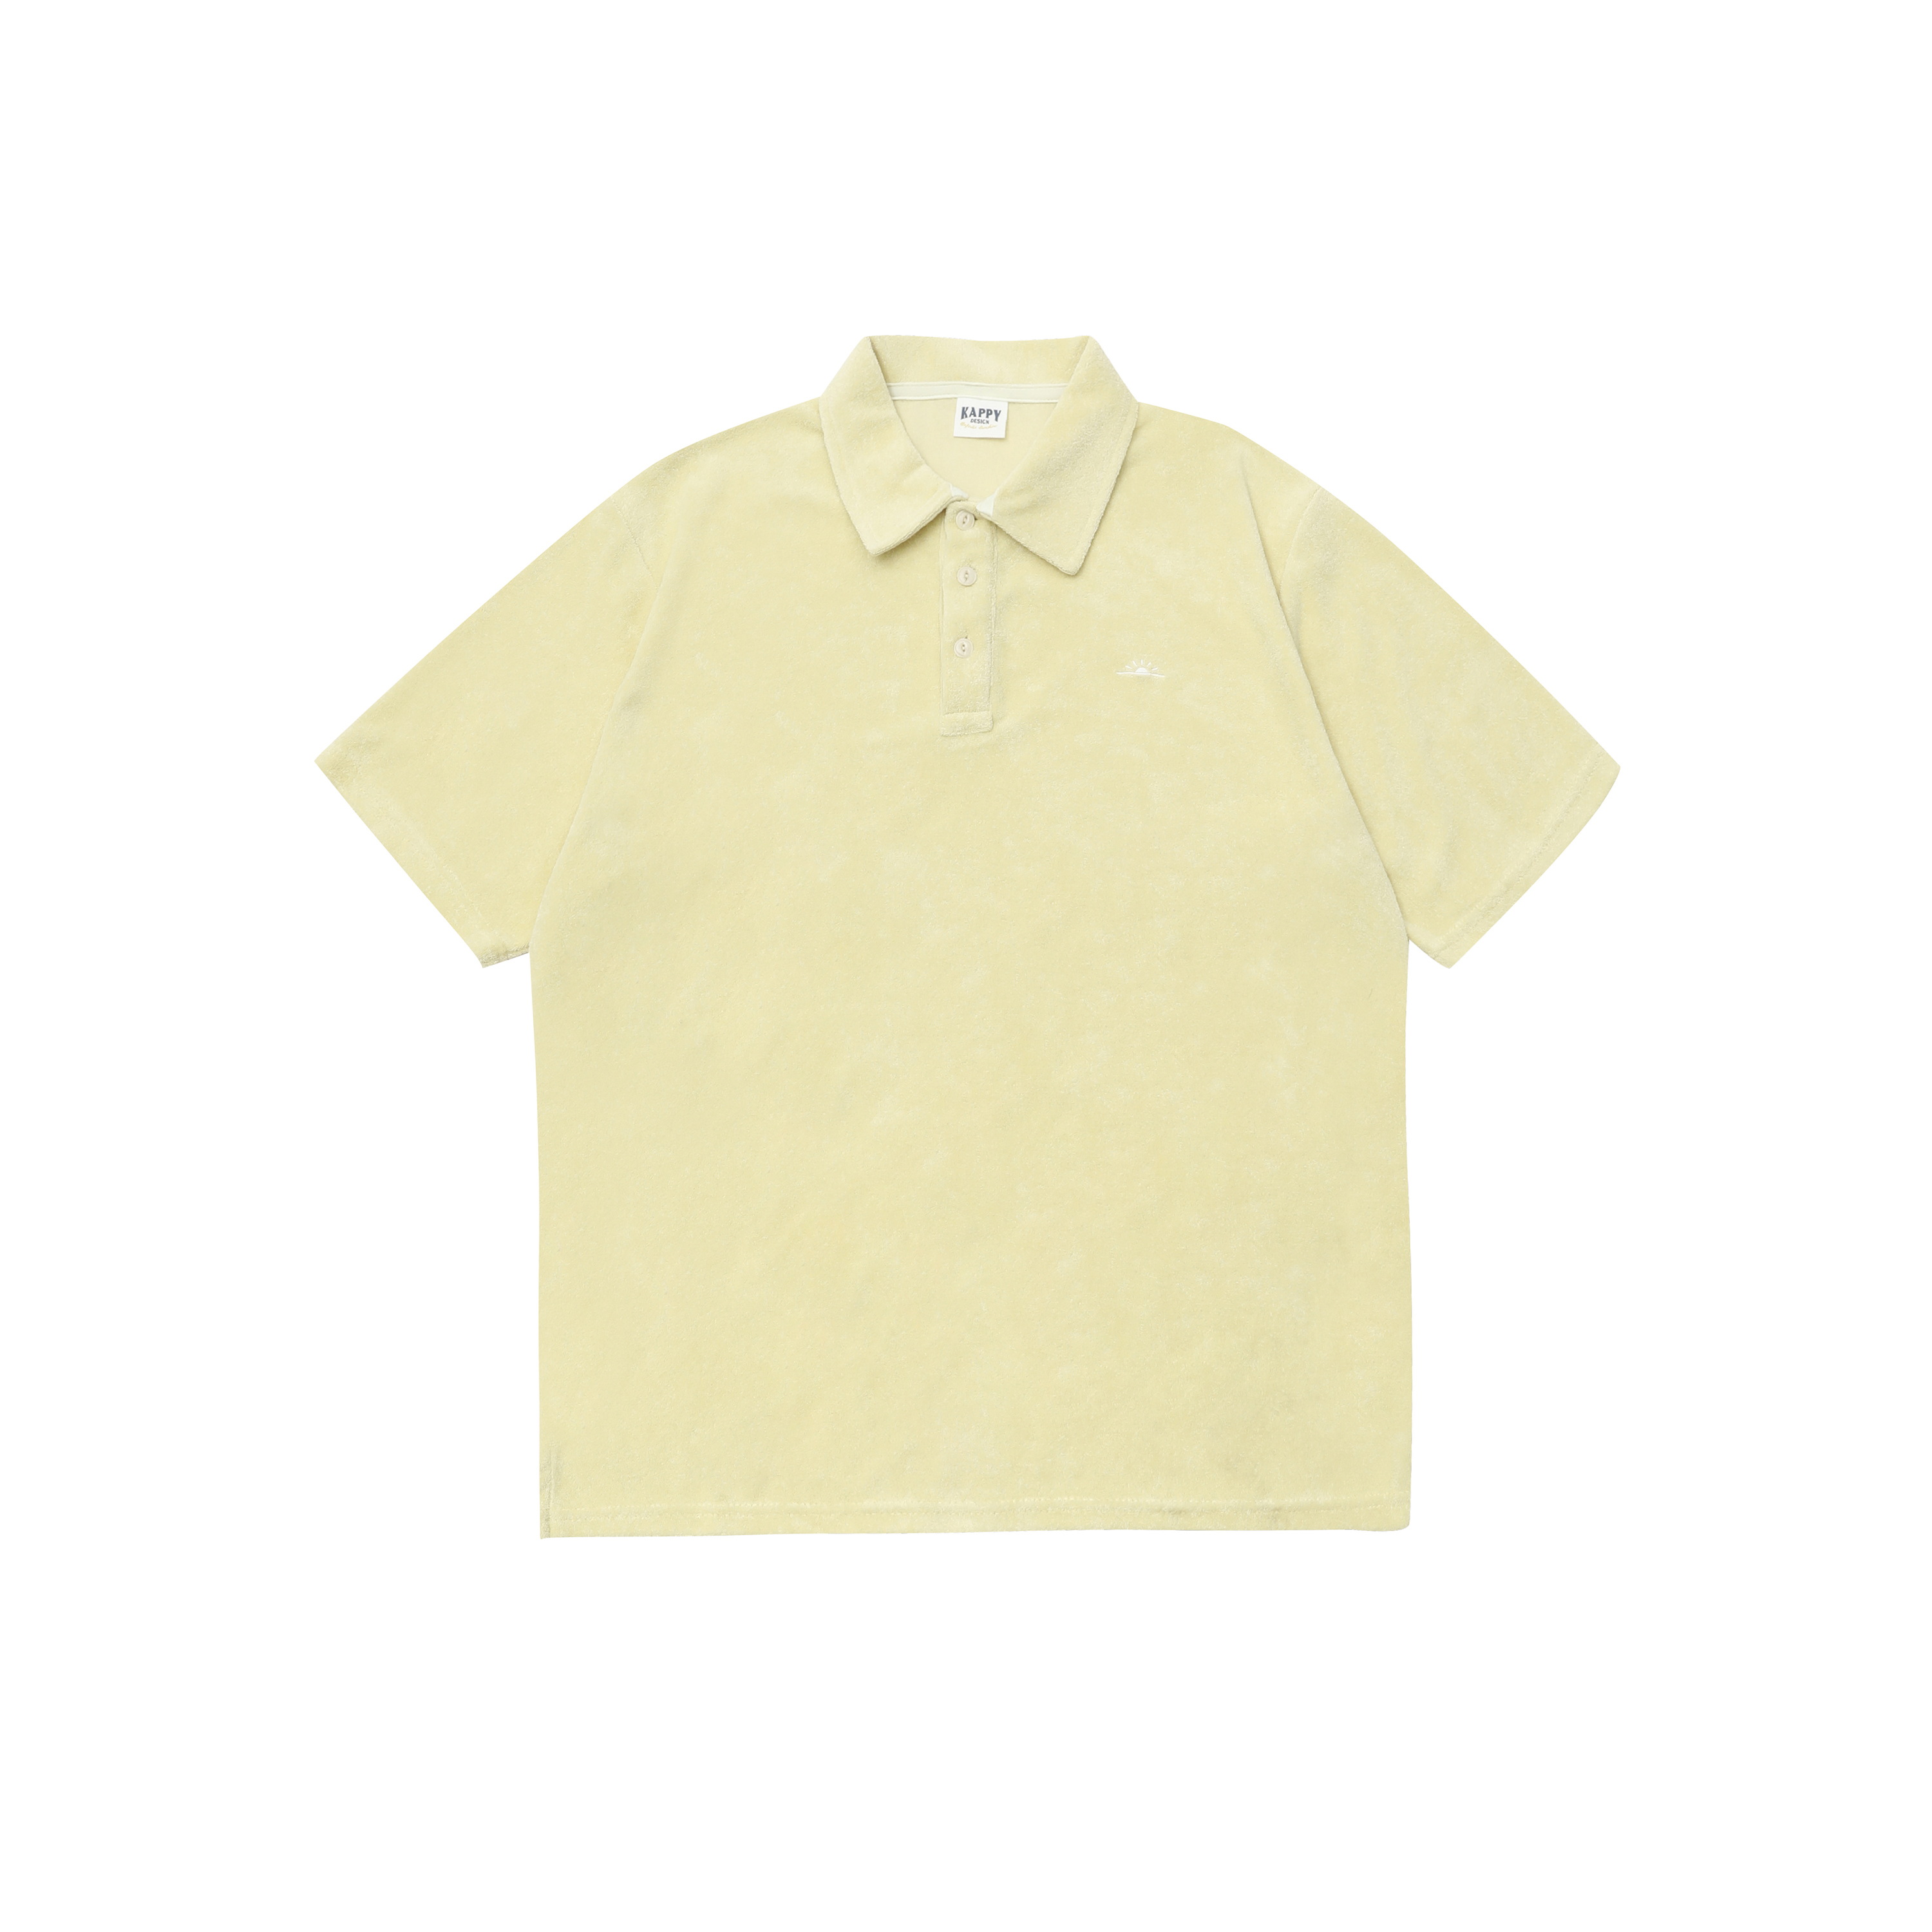 Sunrise terry collar t-shirt butter